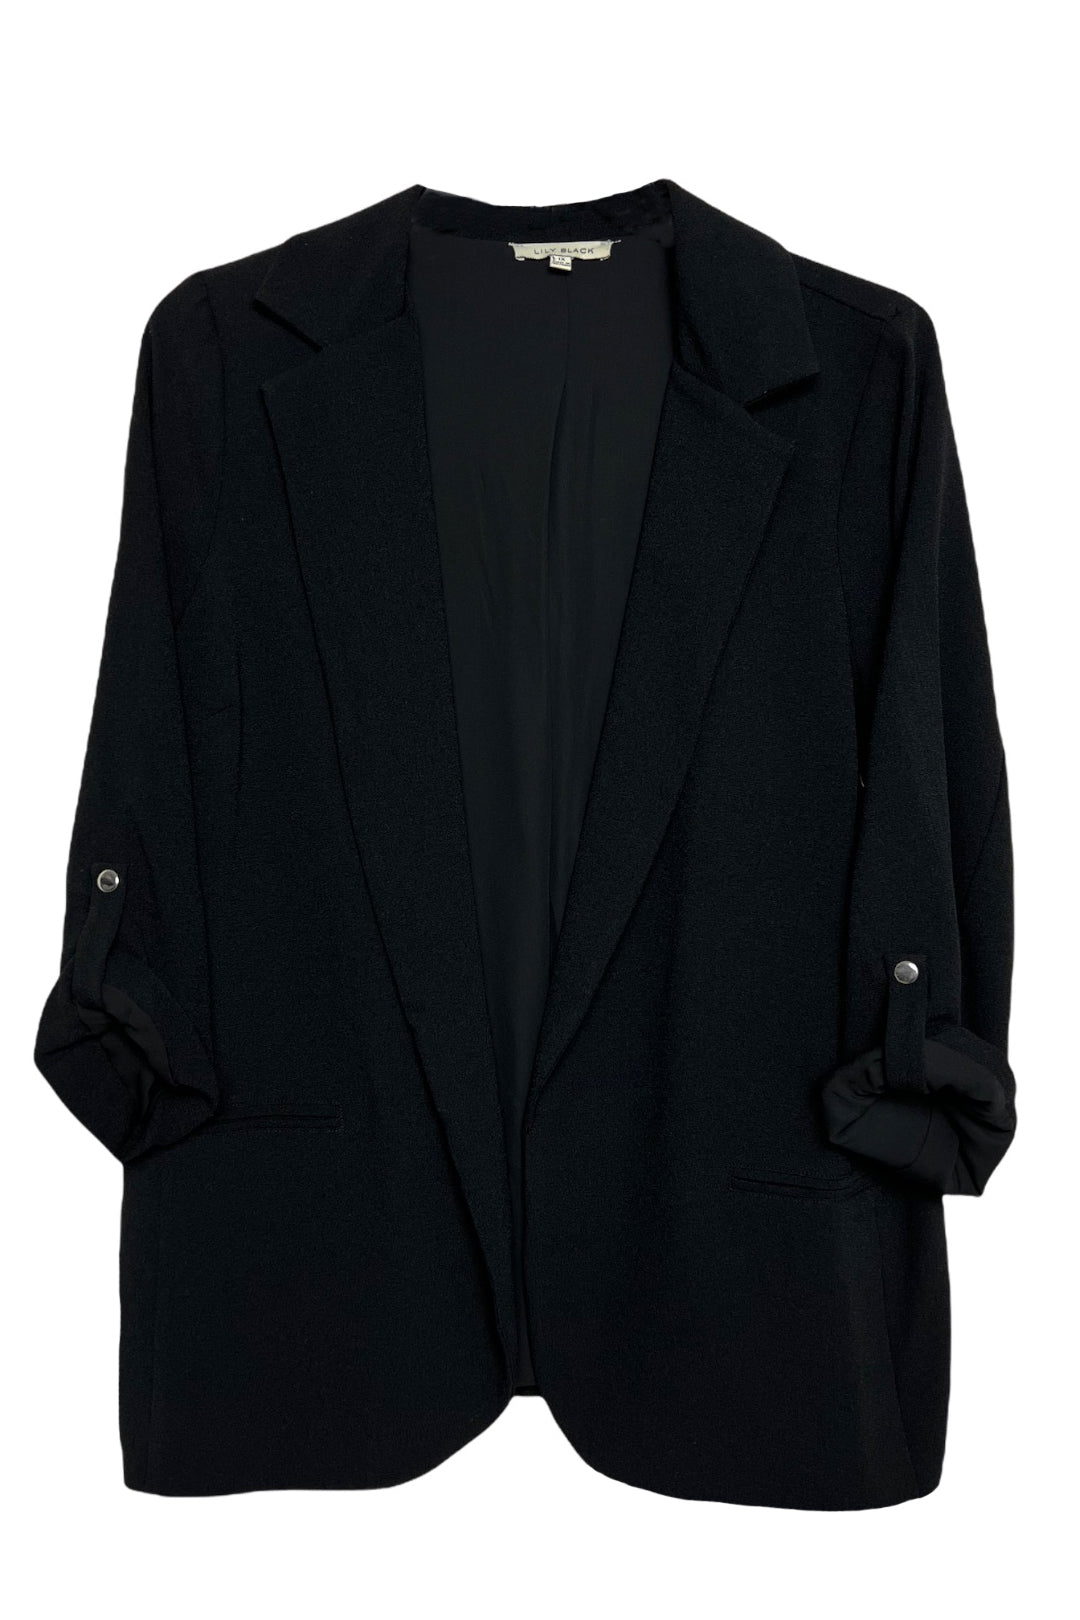 Glow Fashion Boutique Plus Size Black Blazer